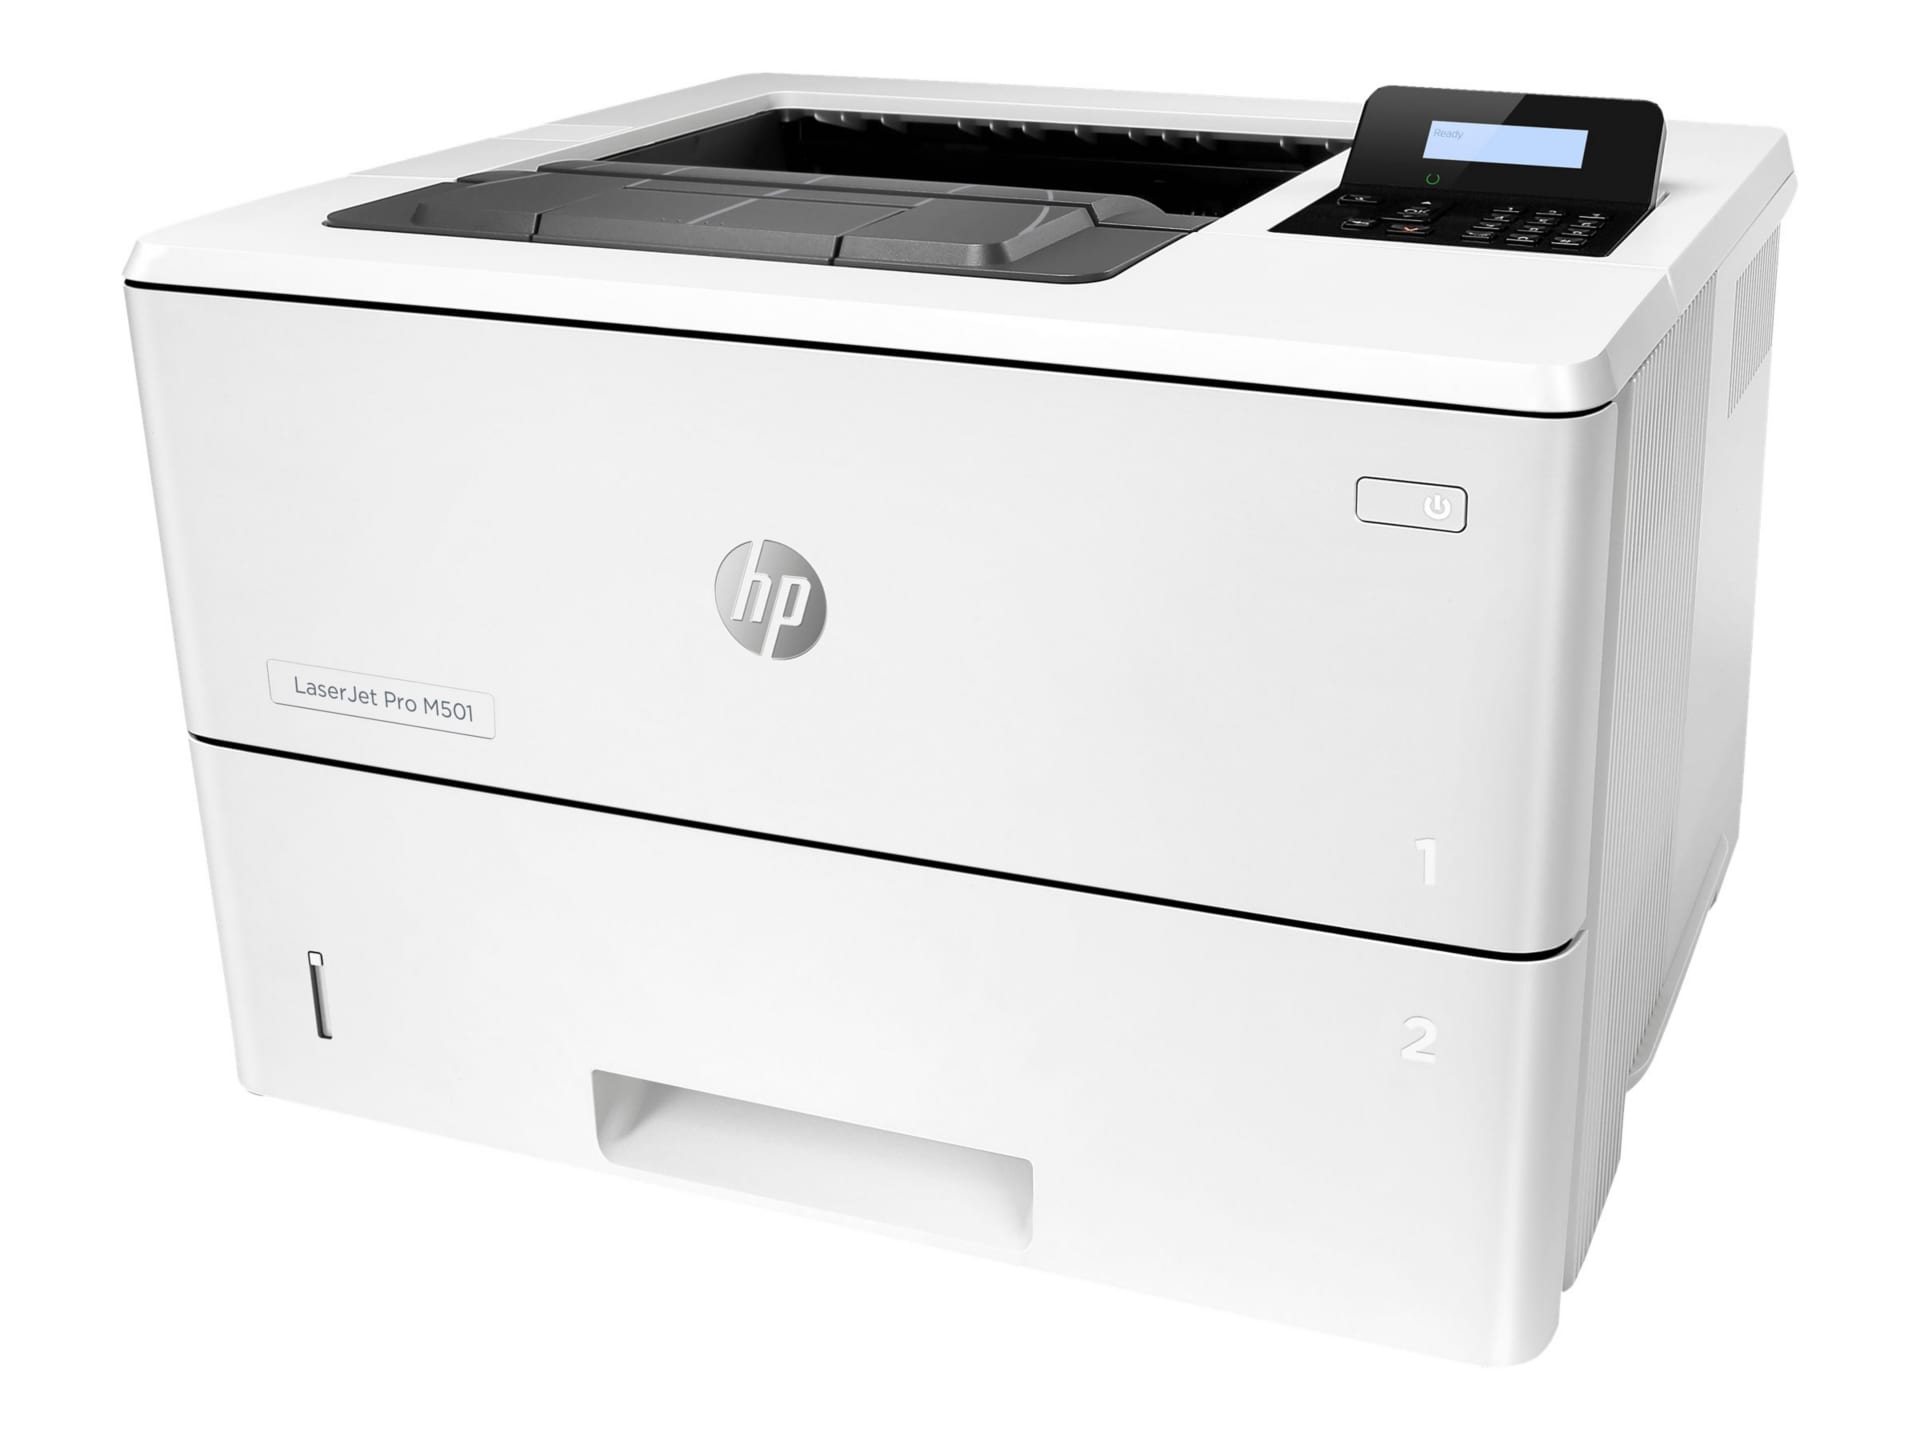 HP LaserJet Pro M501 M501dn Desktop Laser Printer - Monochrome - J8H61A#BGJ  - Laser Printers 